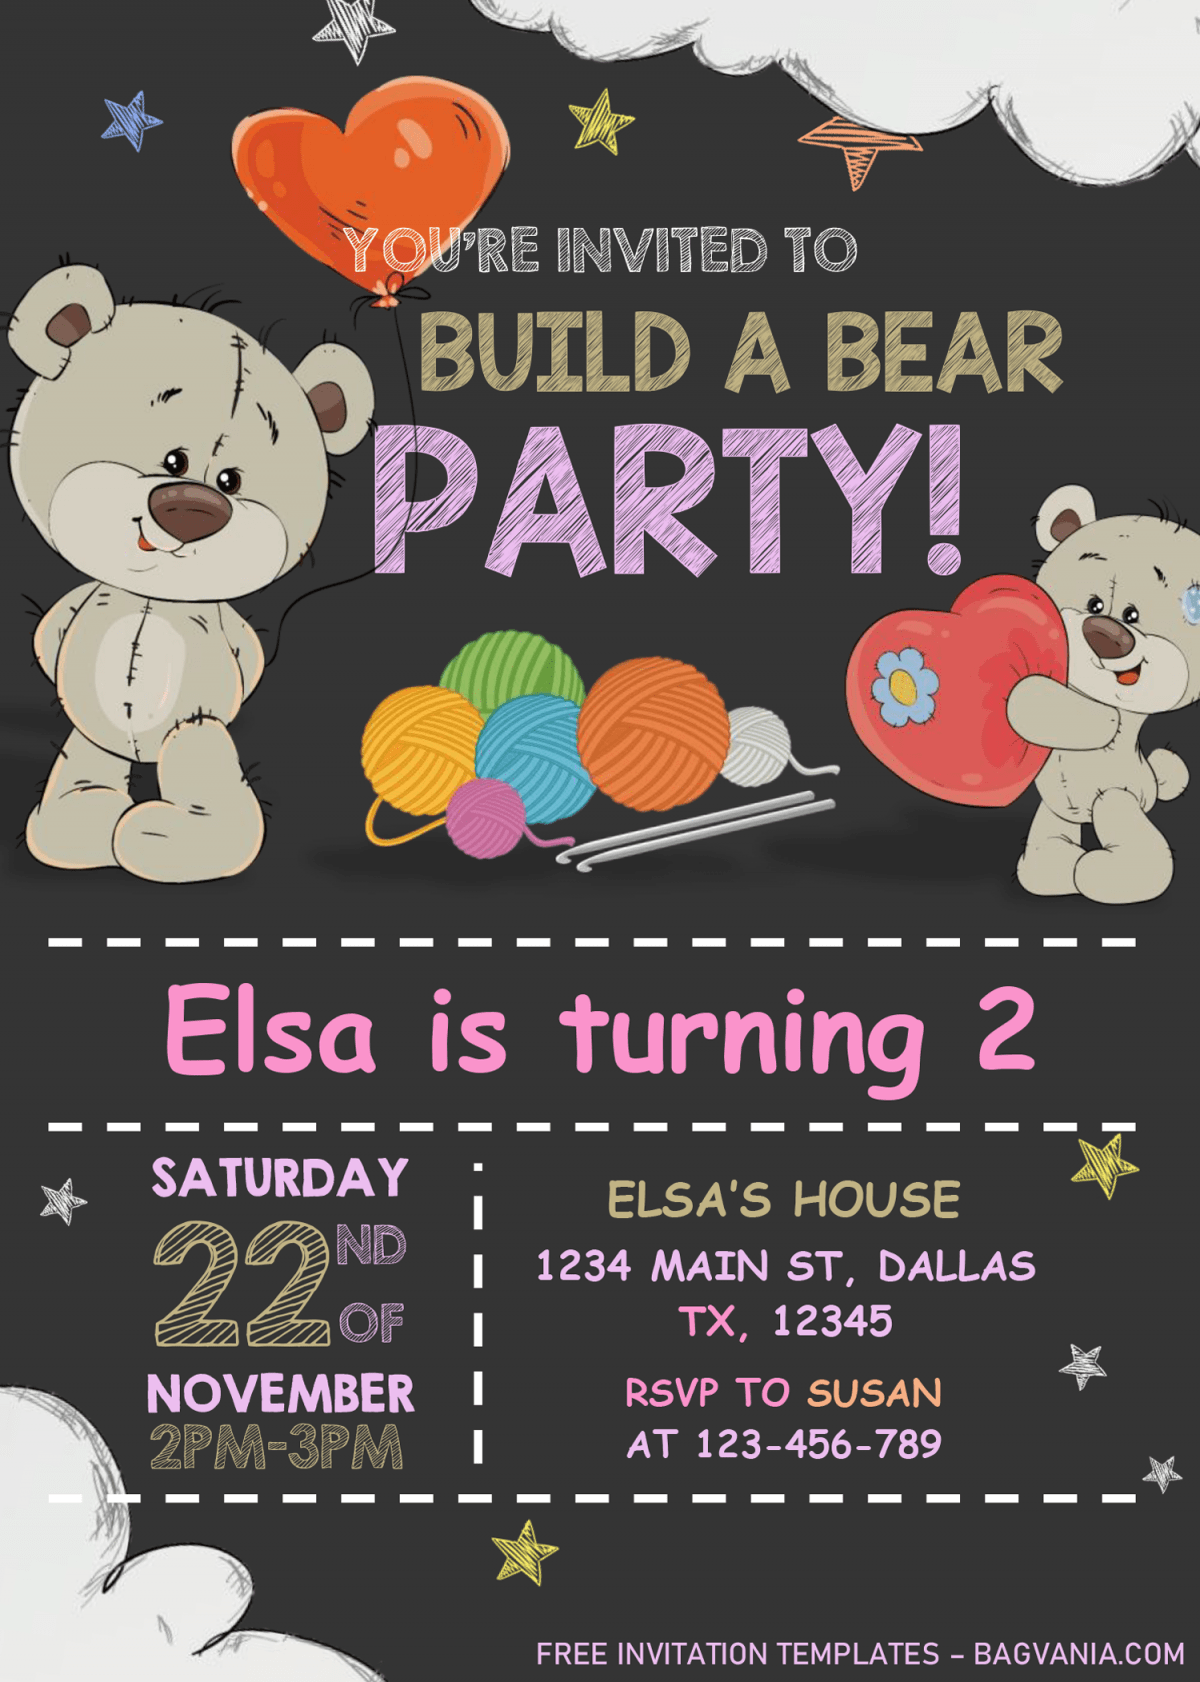 Build A Bear Birthday Invitation Templates - Editable With MS Word and has cute teddy bear